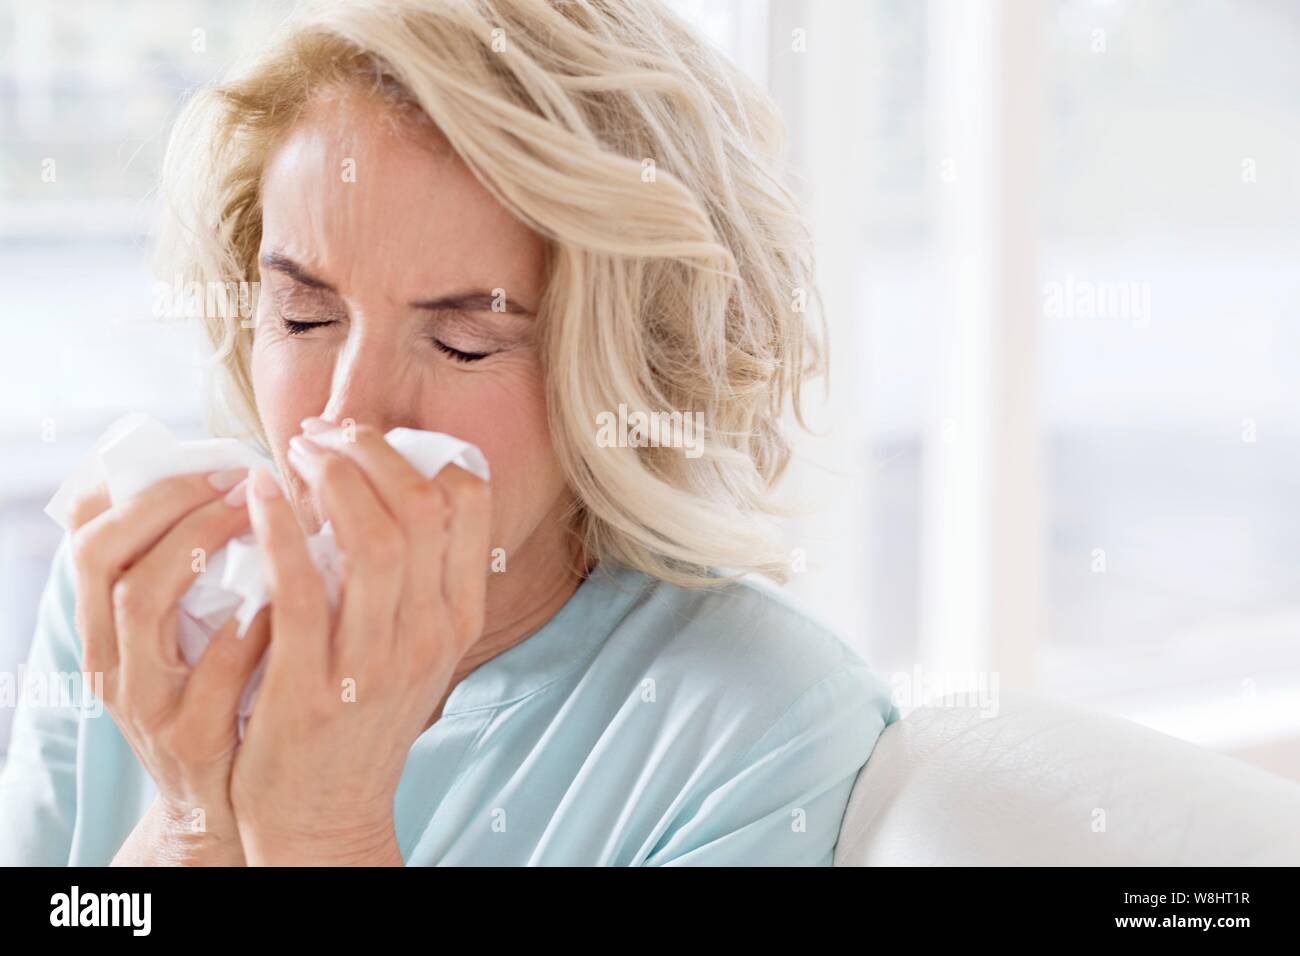 Young woman blowing nose sur les tissus. Banque D'Images